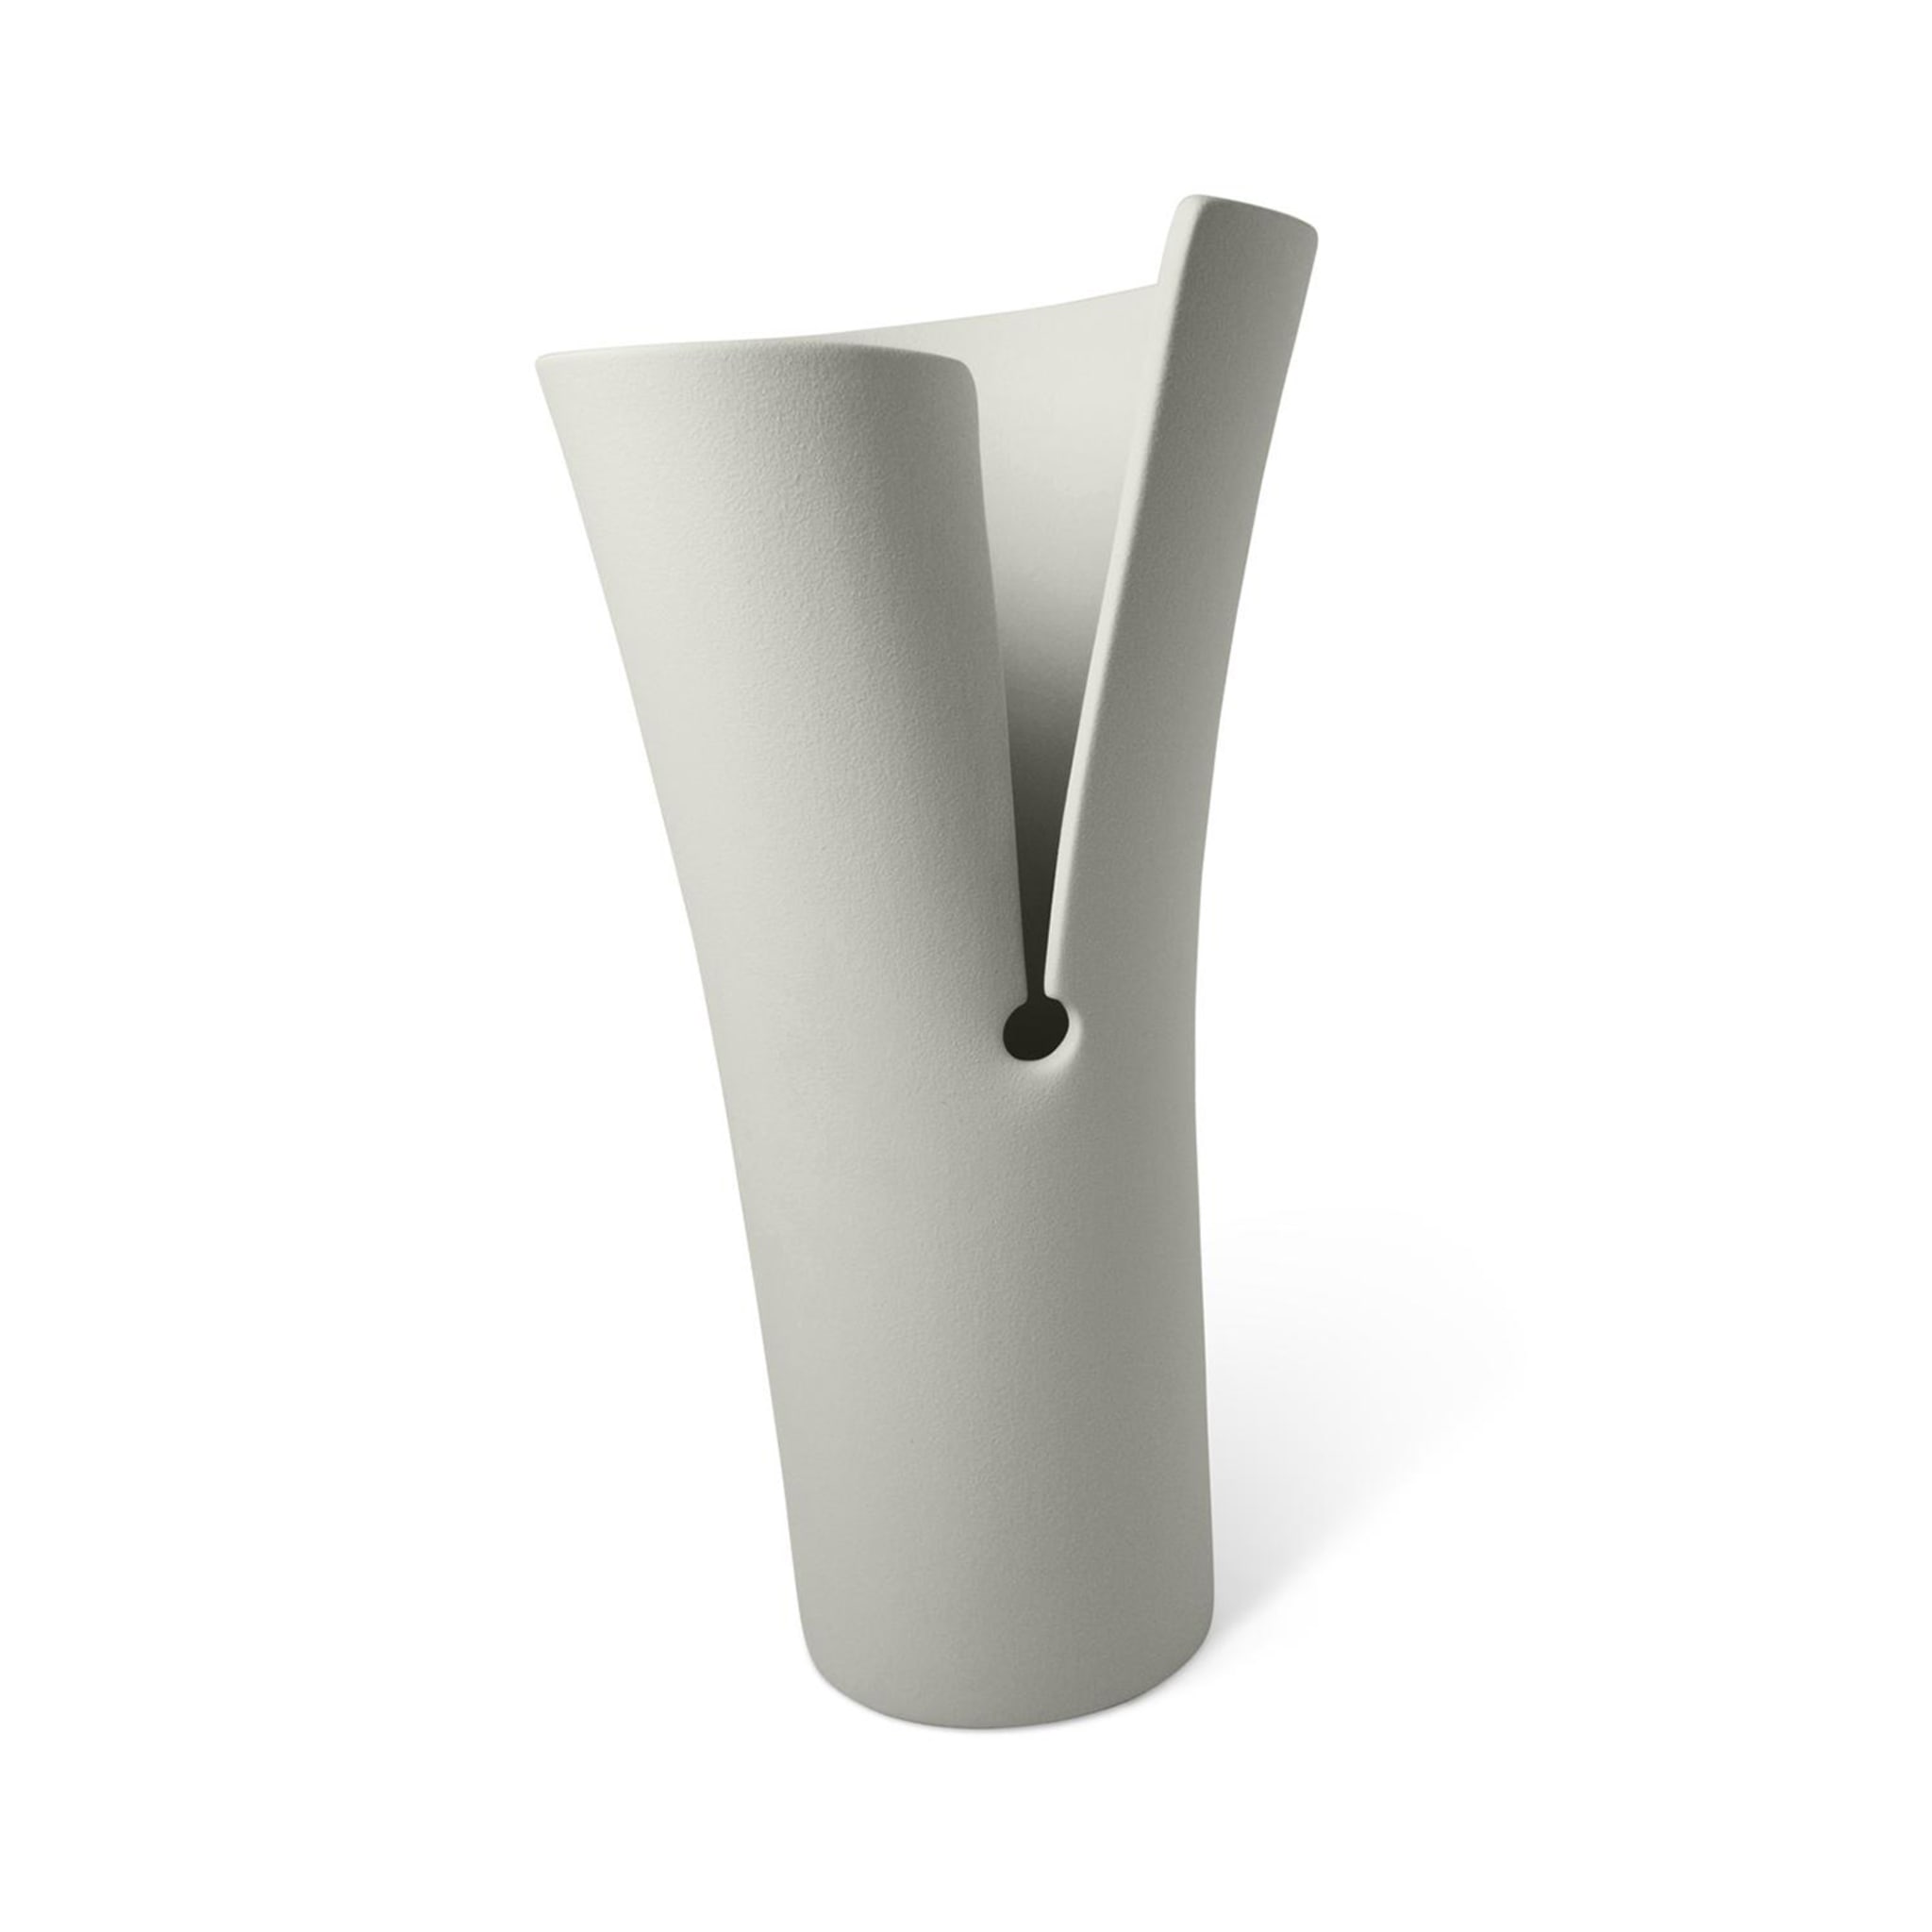 Helix Vase #3 - Alternative view 2